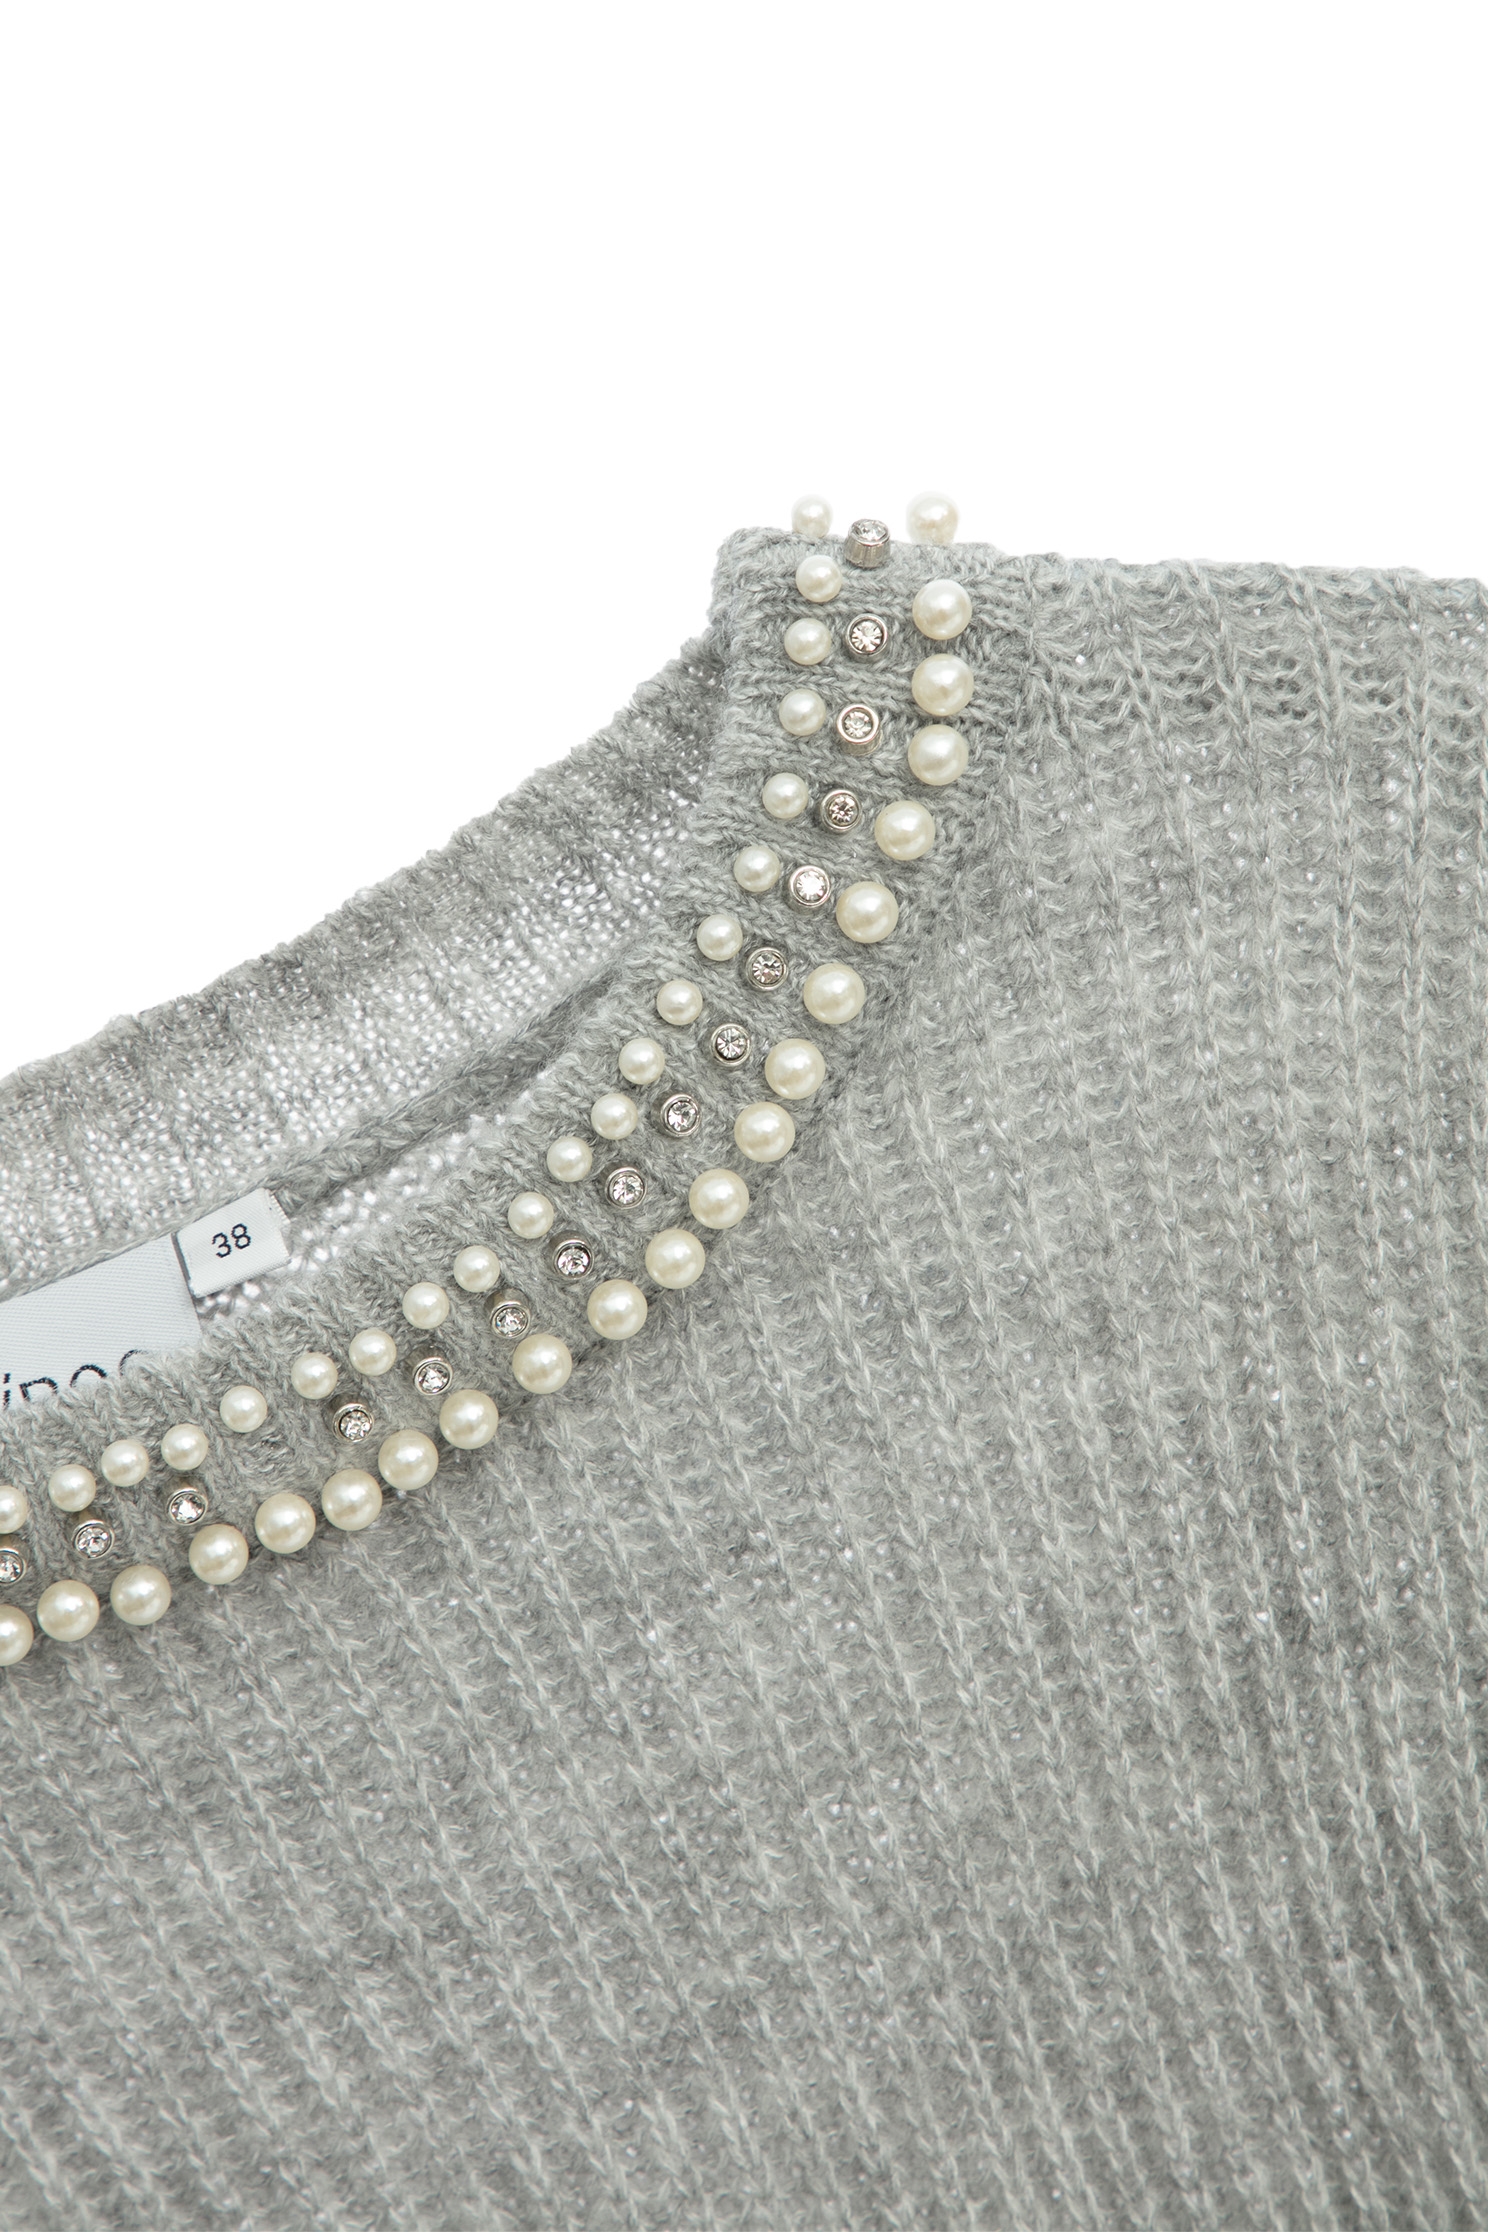 綴珍珠領針織上衣綴珍珠領針織上衣,上衣,珍珠,秋冬穿搭,針織,針織上衣,針織衫